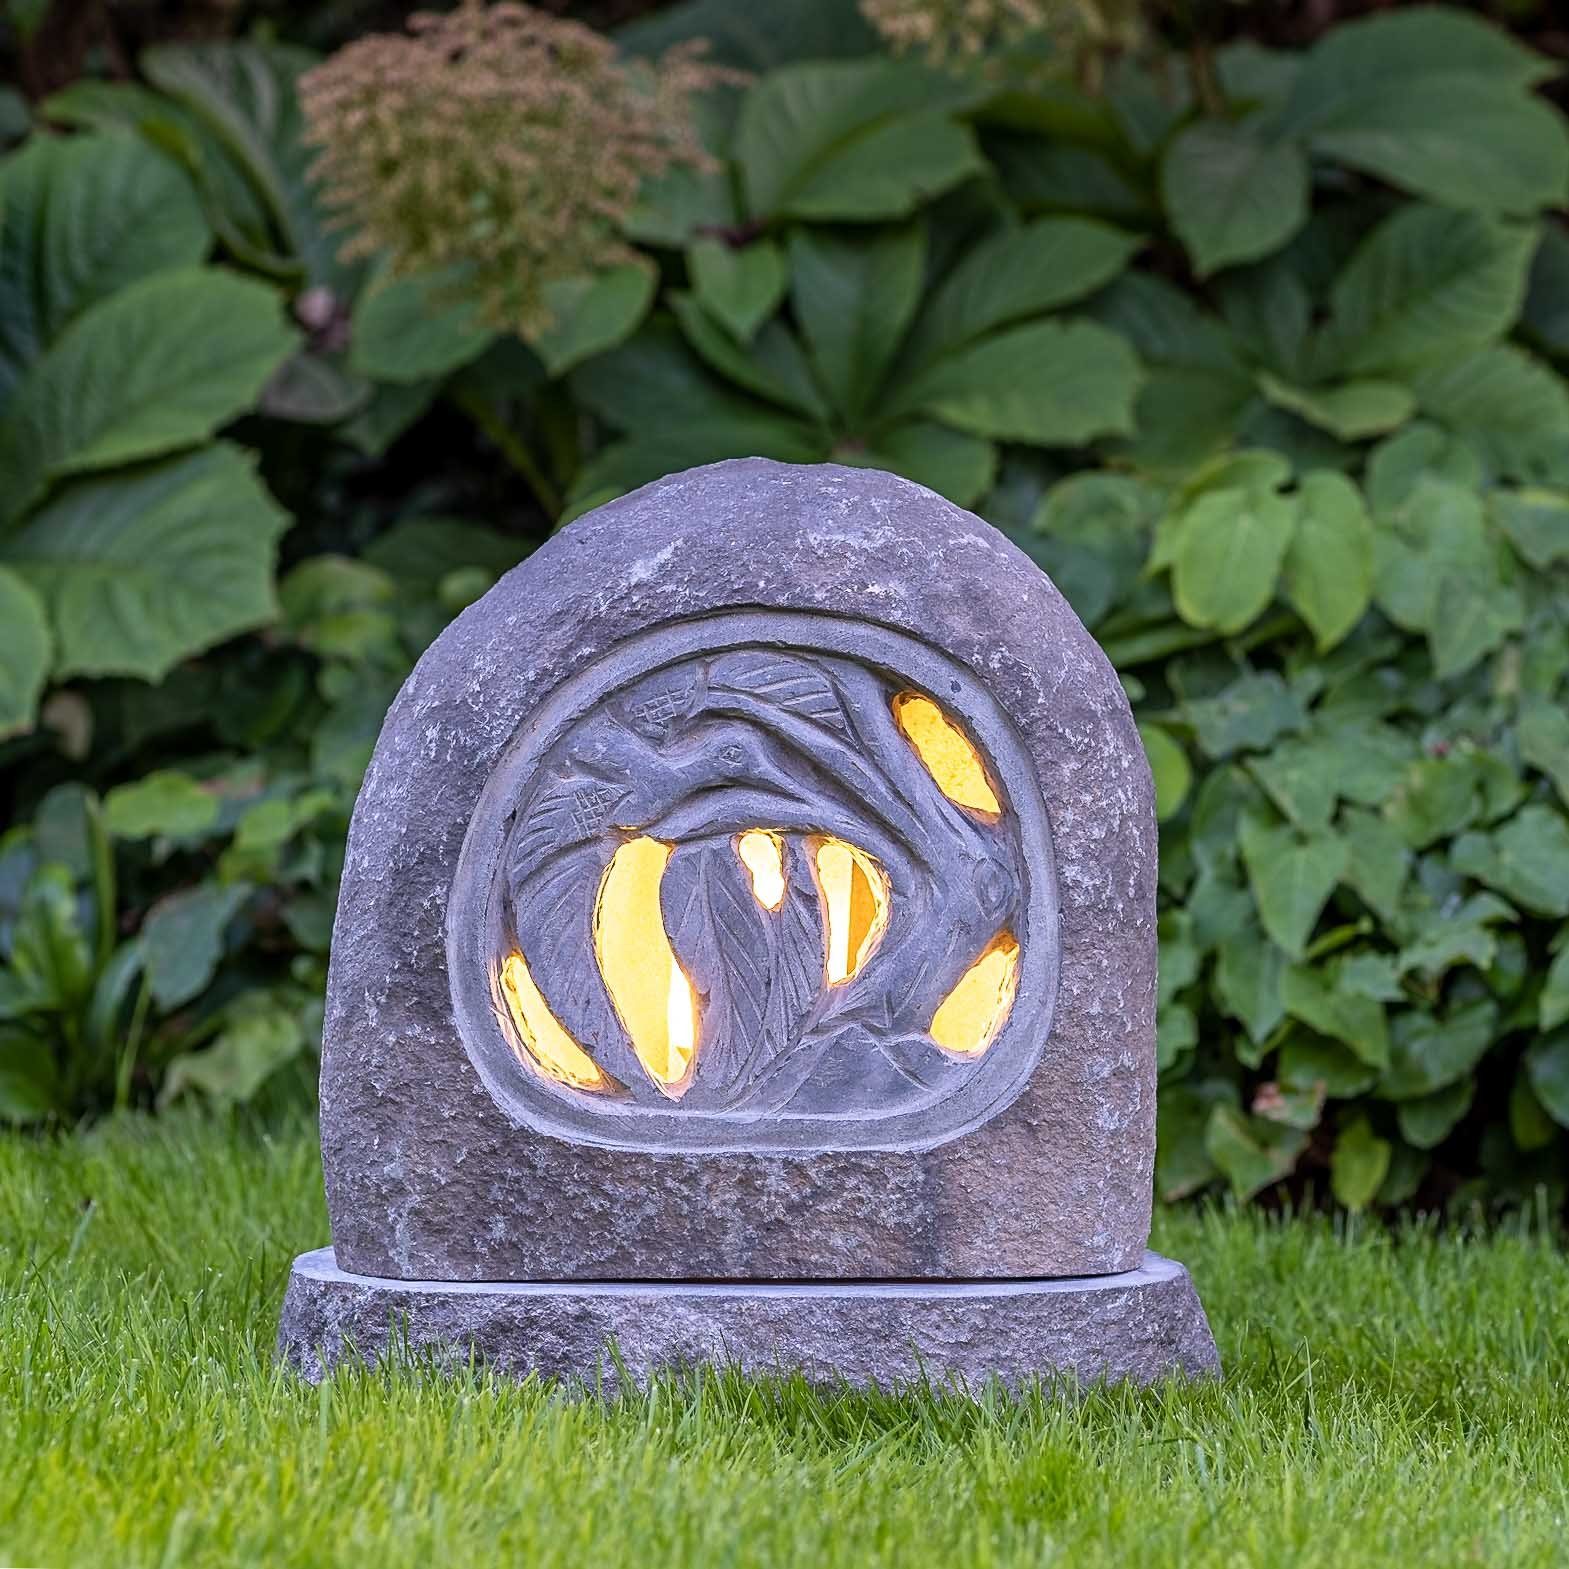 gegen Stein, robust und Figur sehr – Granitstein Frost, ein Beleuchtete Gartenfigur UV-Strahlung. IDYL witterungsbeständig – Naturprodukt Regen im Granit